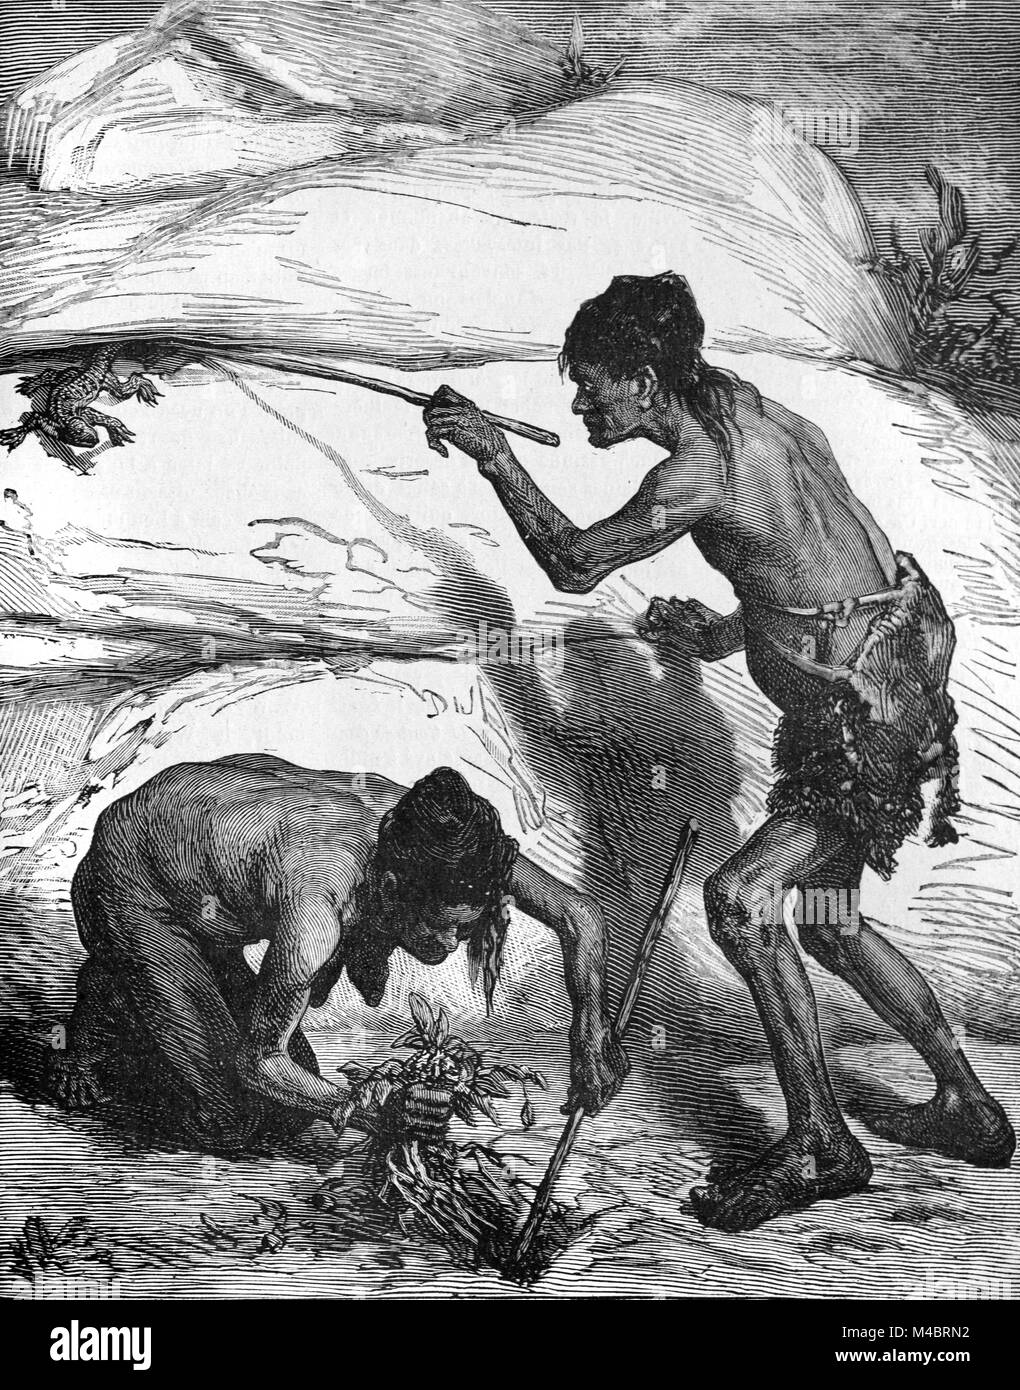 Comanche indiens ou amérindiens, aka Yampericos, Chasse aux lézards dans la région des Grandes Plaines des États-Unis (gravure, 1880) Banque D'Images